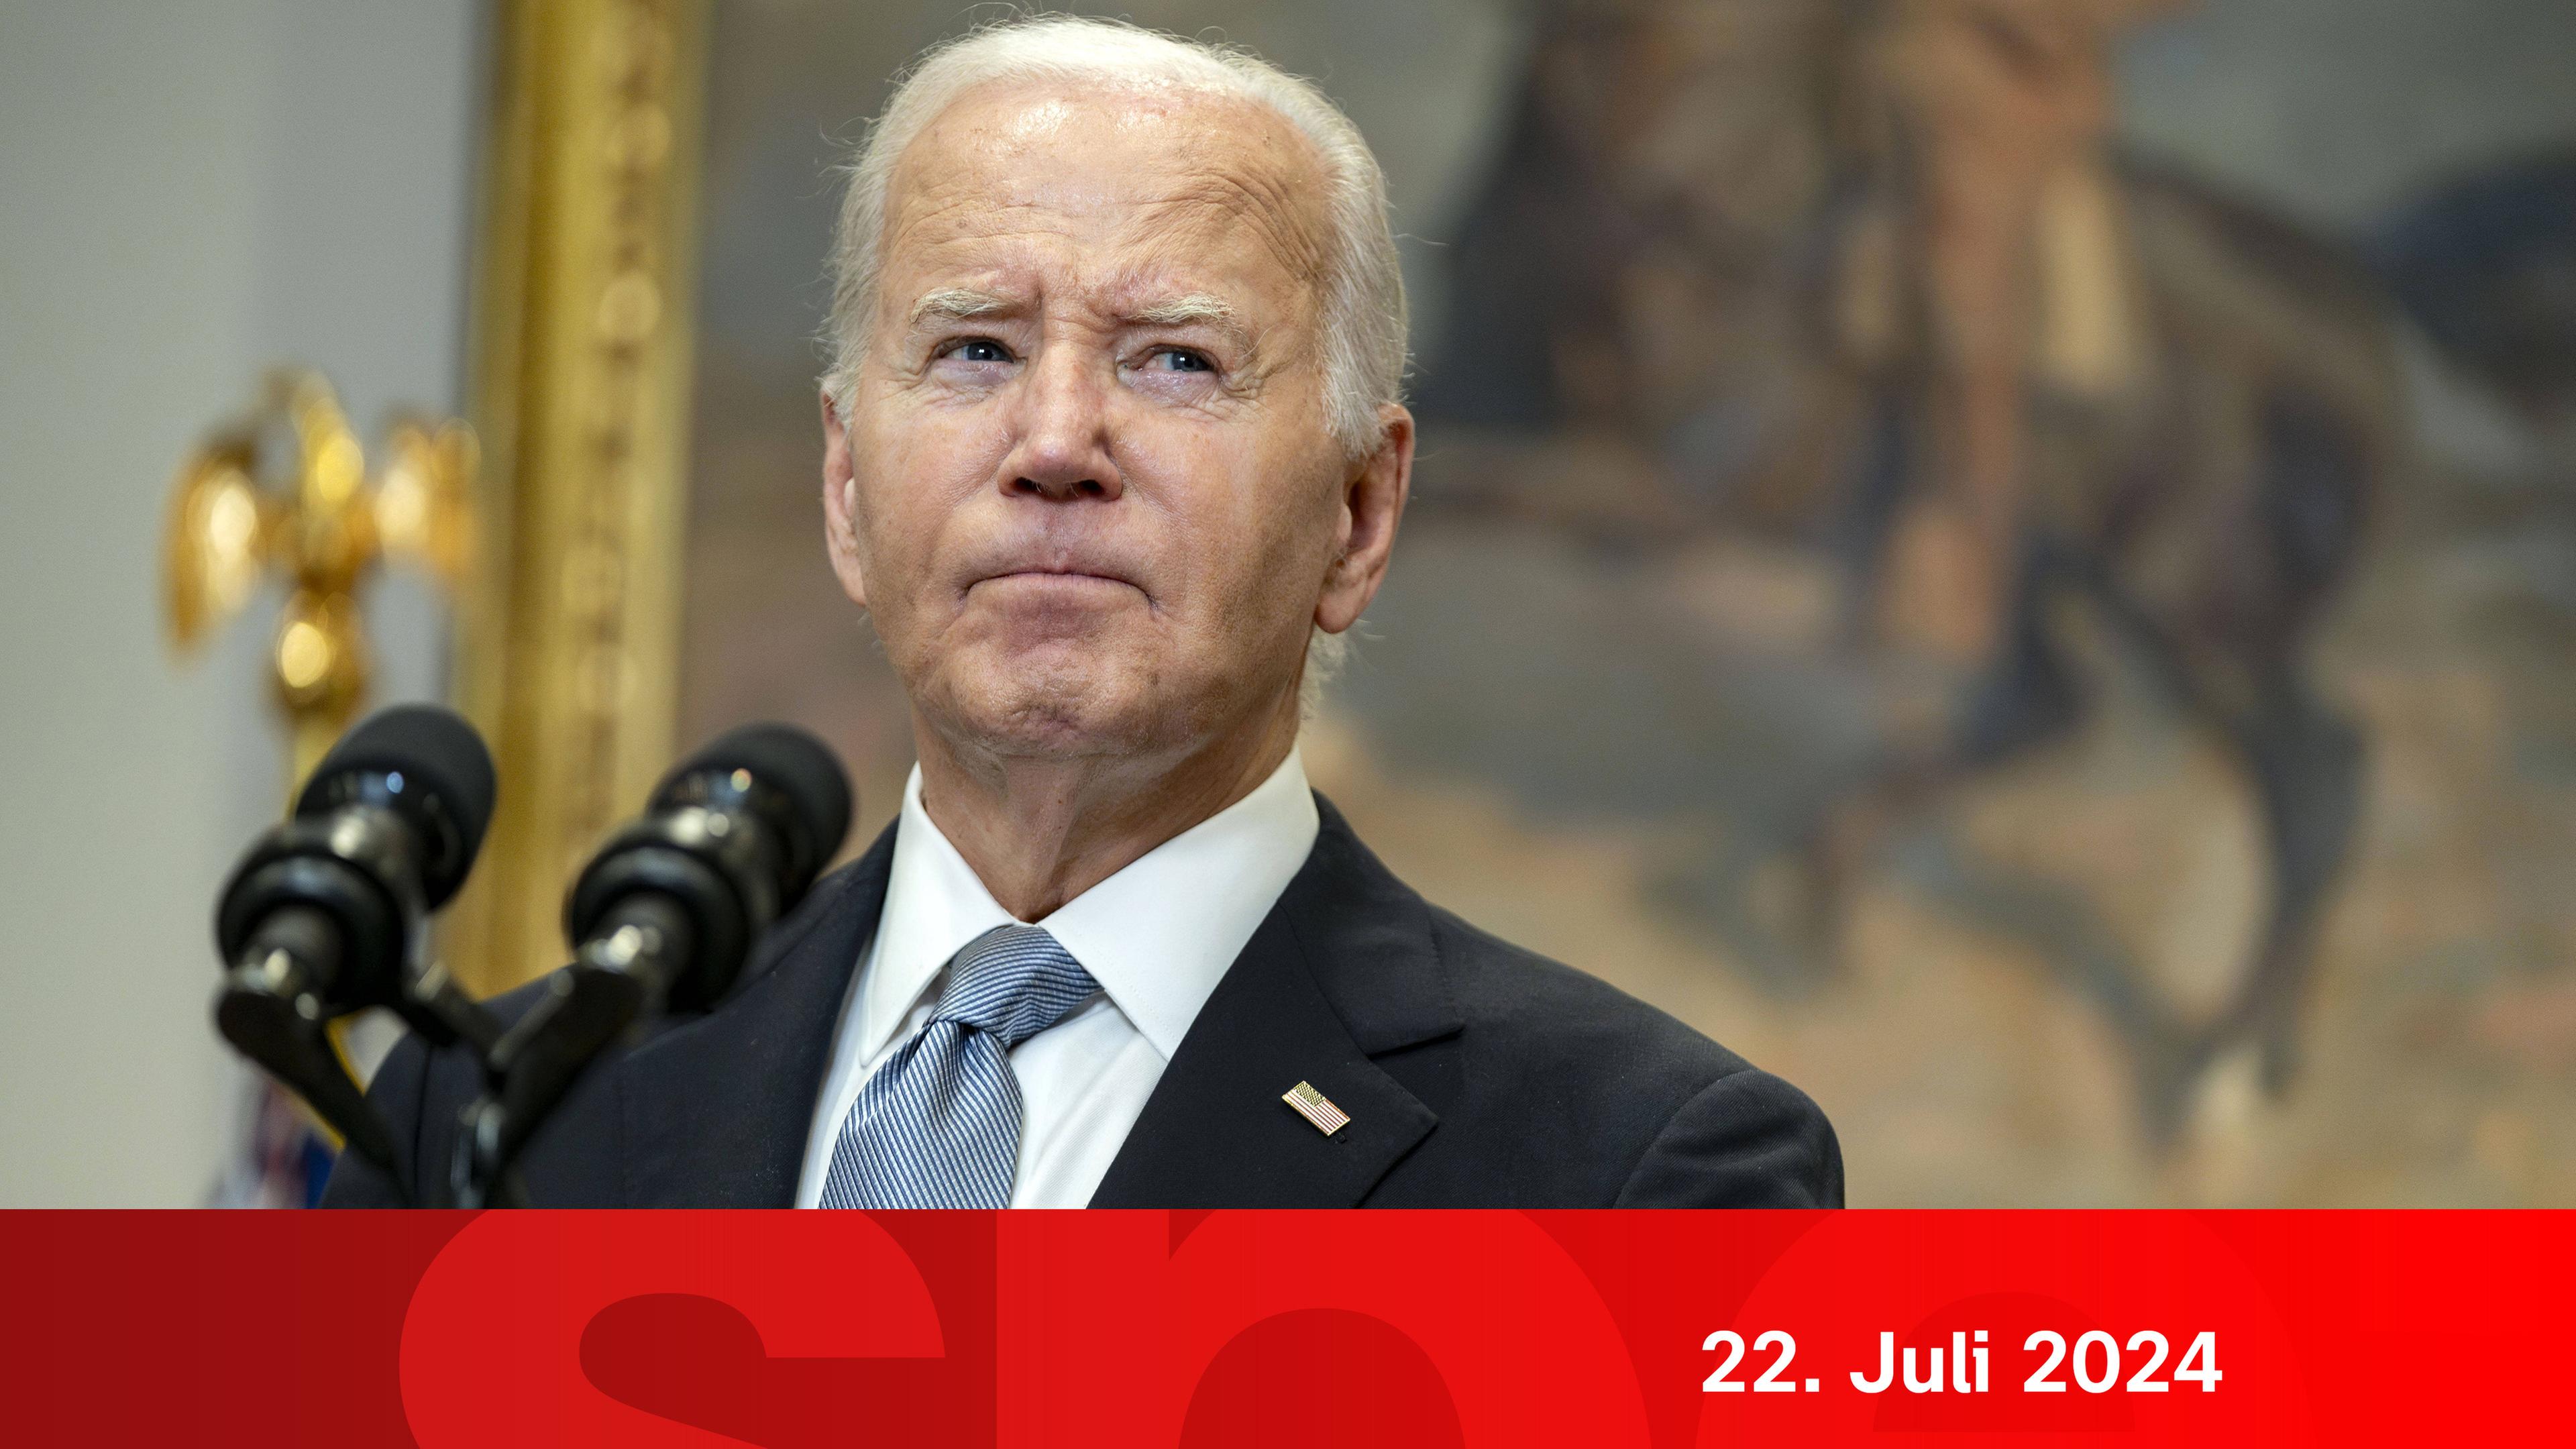 ZDFspezial: Joe Biden tritt von Kandidatur zurück